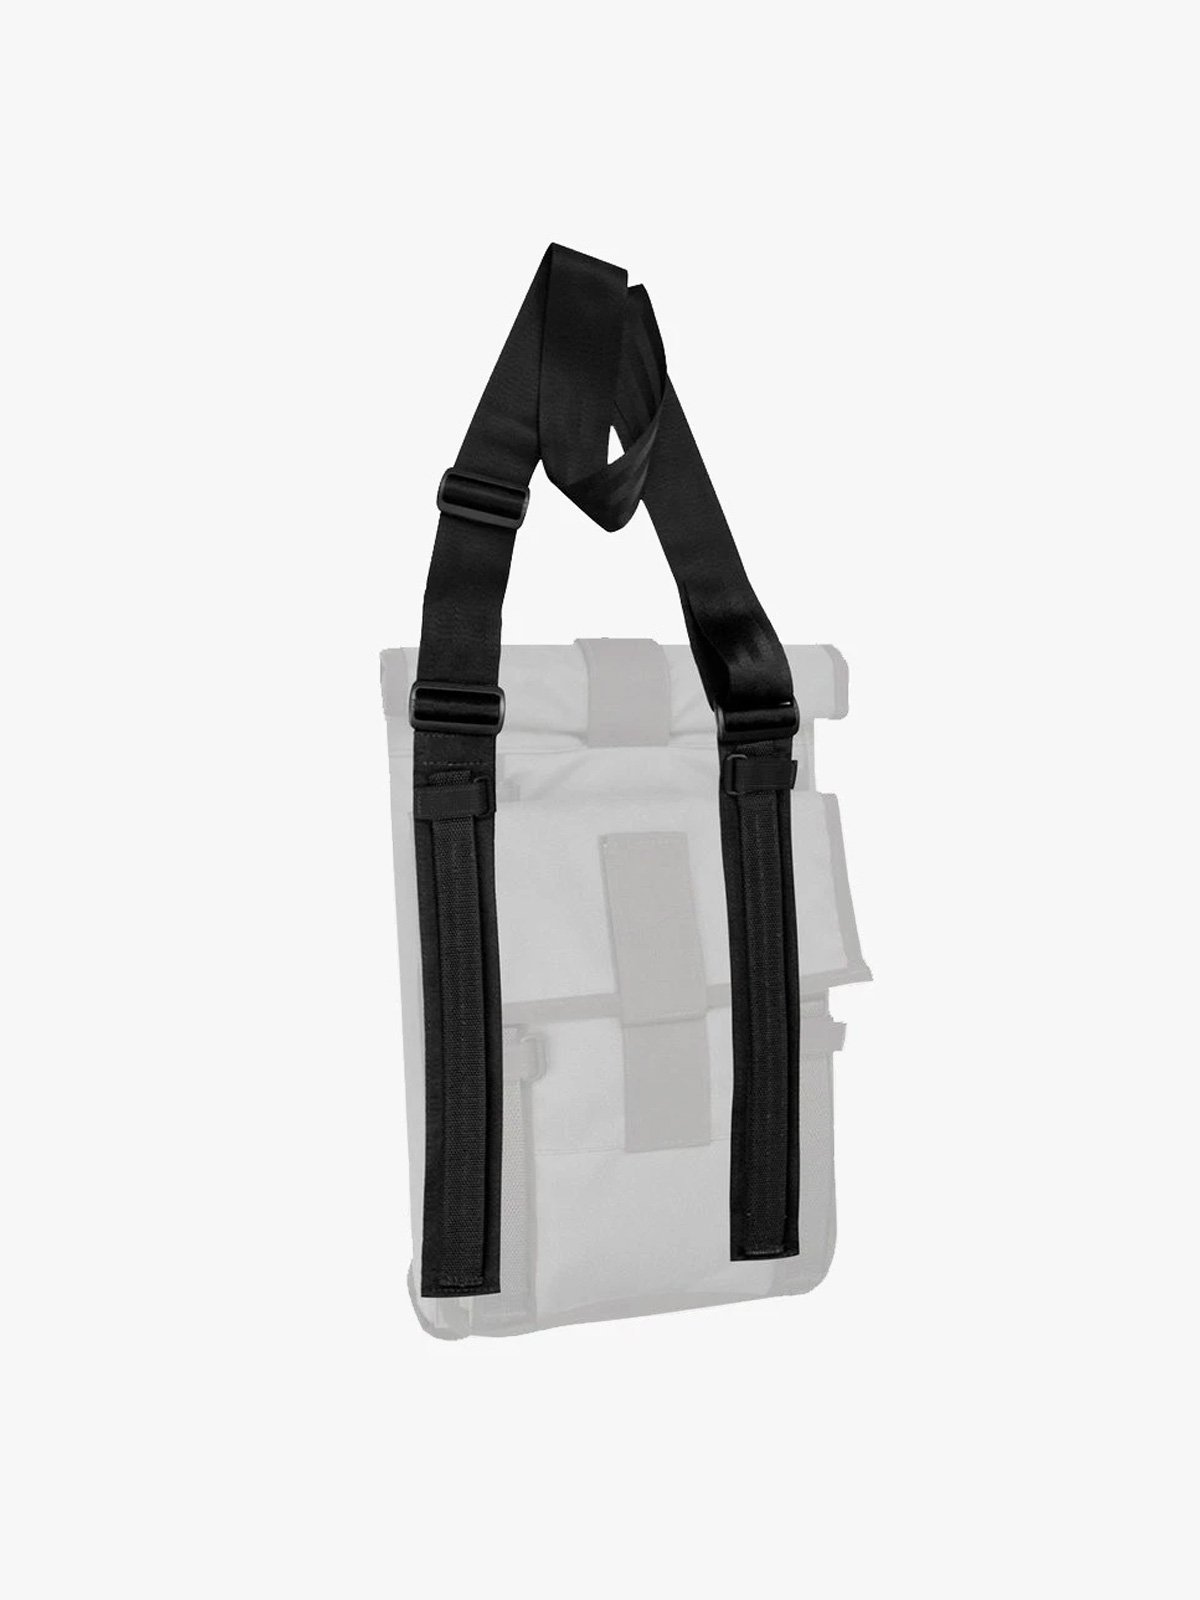 Arkiv Shoulder Strap by Mission Workshop - Säänkestävät laukut ja tekniset vaatteet - San Francisco & Los Angeles - Rakennettu kestämään - ikuinen takuu